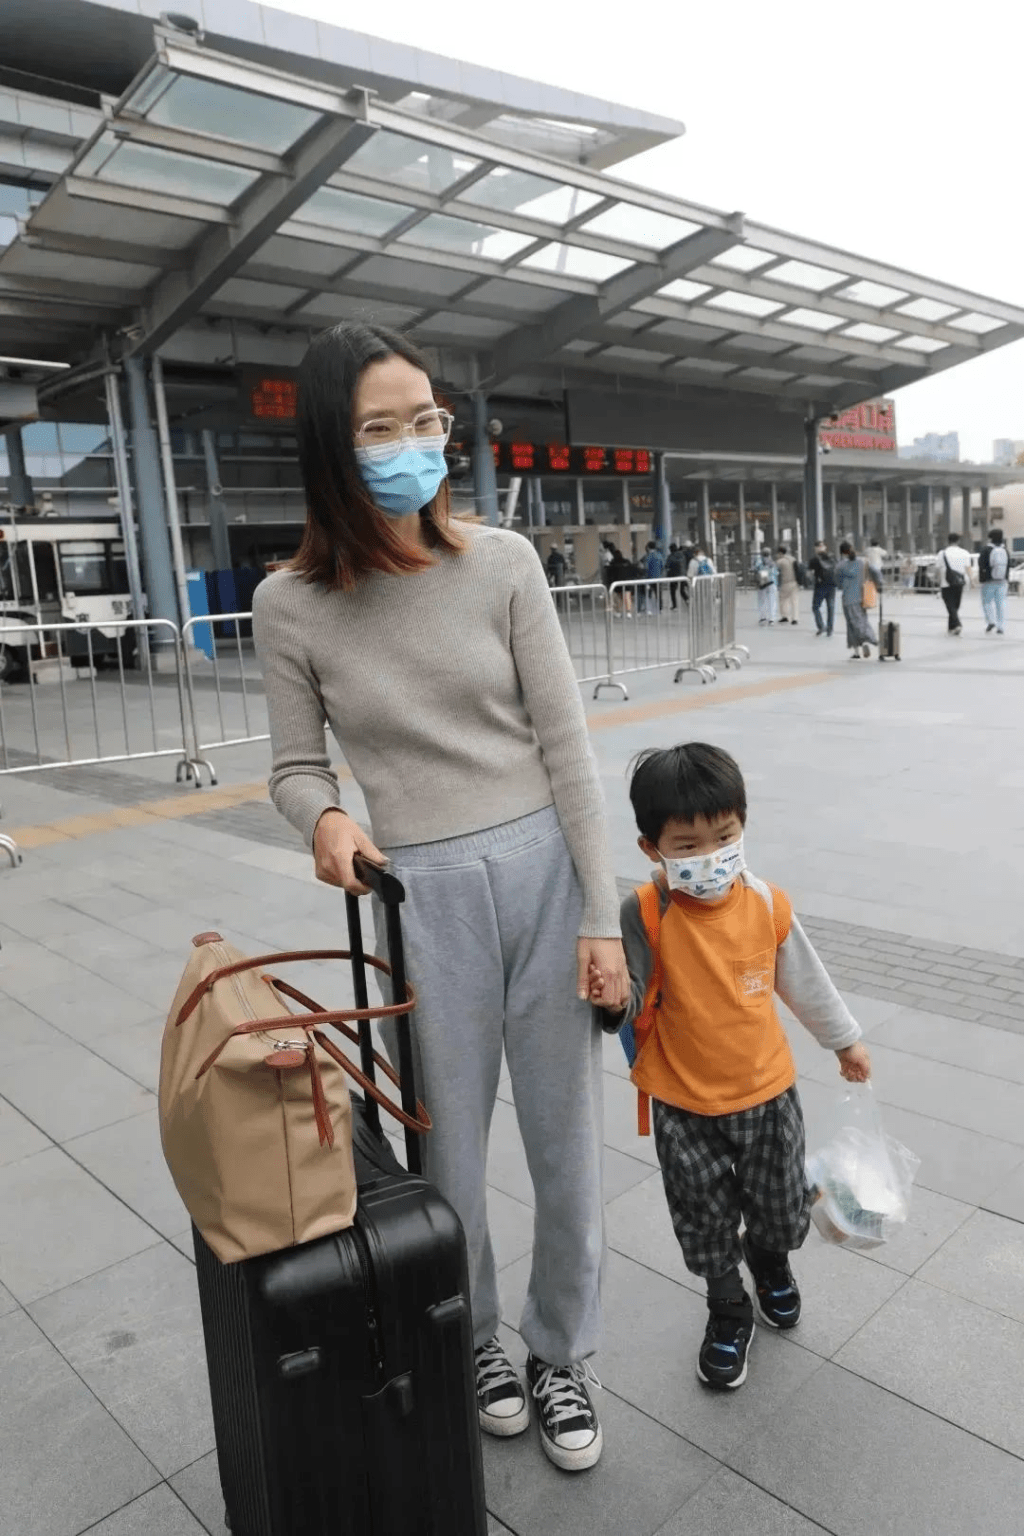 來自廣東江門的曾女士帶著4歲的兒子過港，打算帶他去迪士尼、科技館等地方打卡。